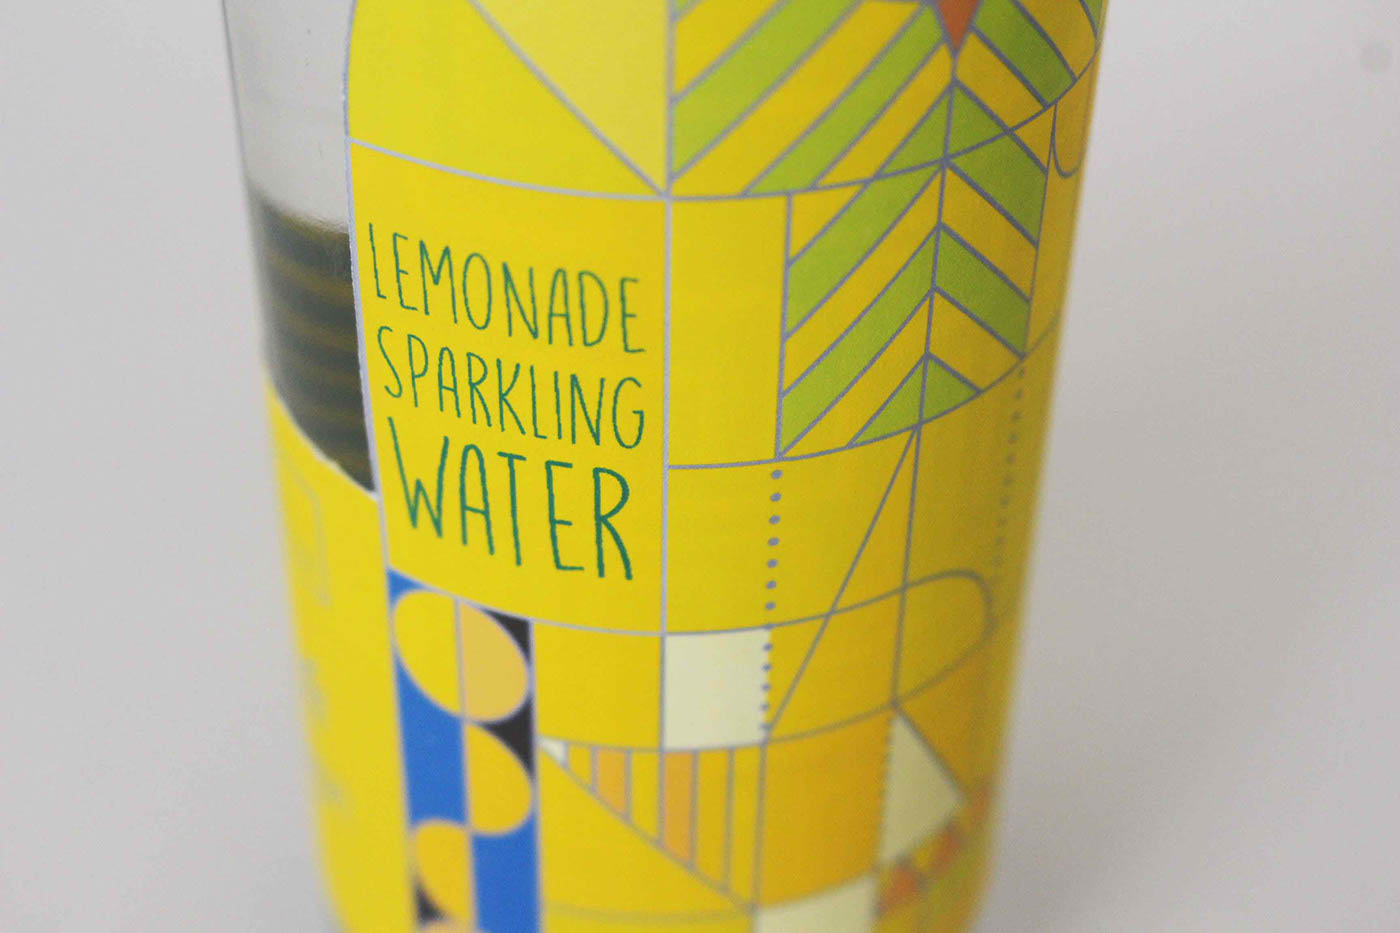 lemonade sparkling water Packaging egyptian Sun God water lemon